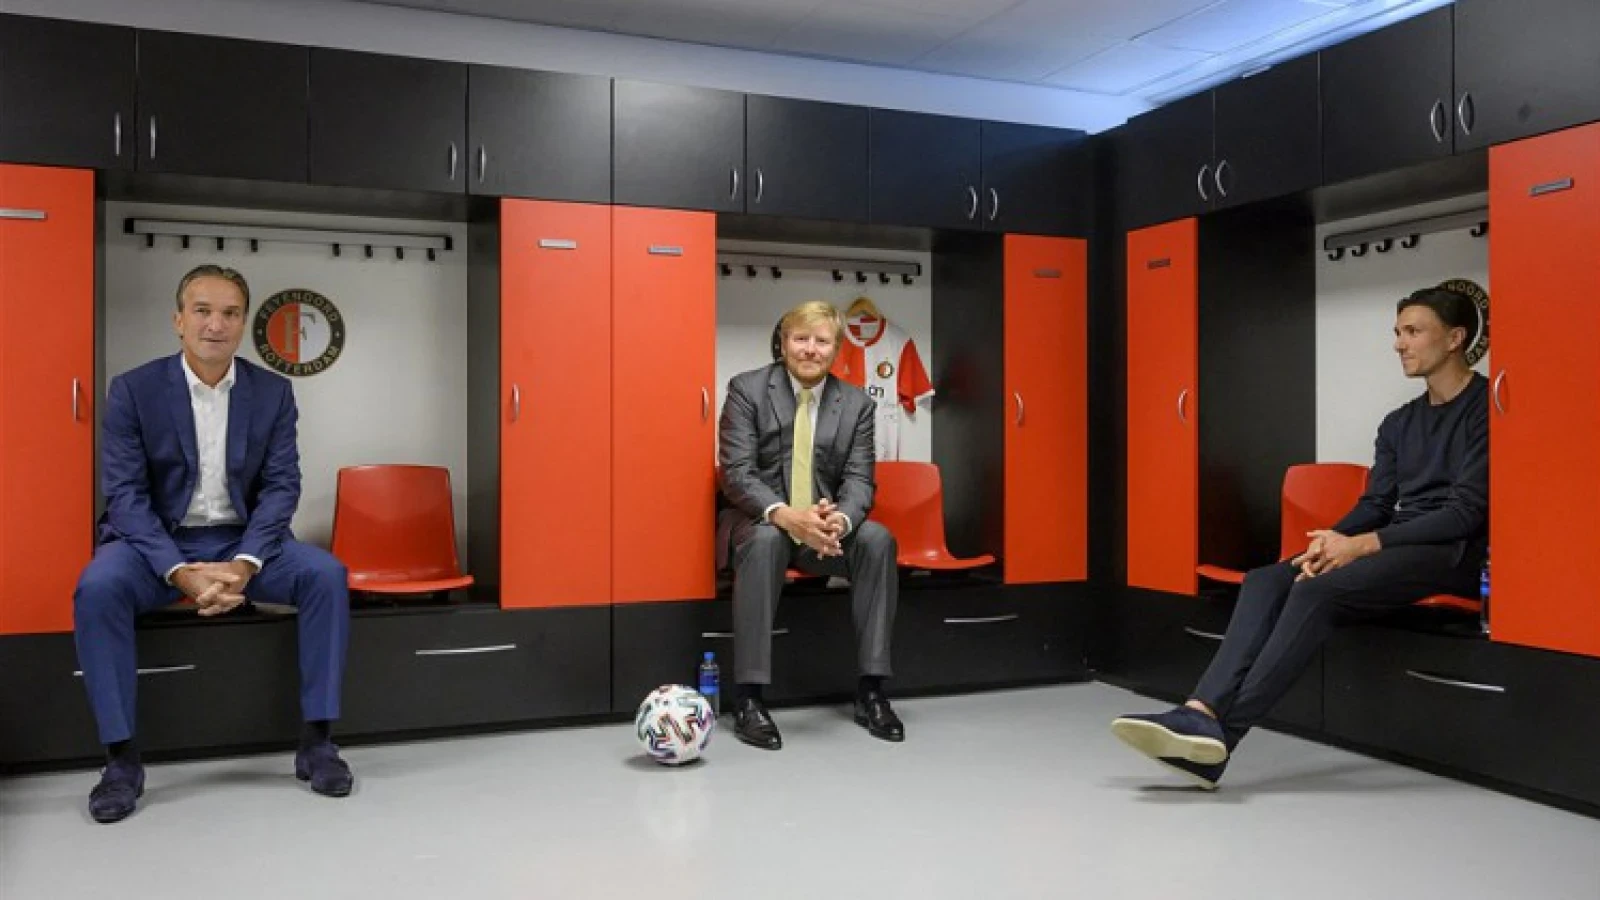 Koning uitgenodigd voor wedstrijd Feyenoord: 'Lijkt me wel dat hij daarop ingaat'